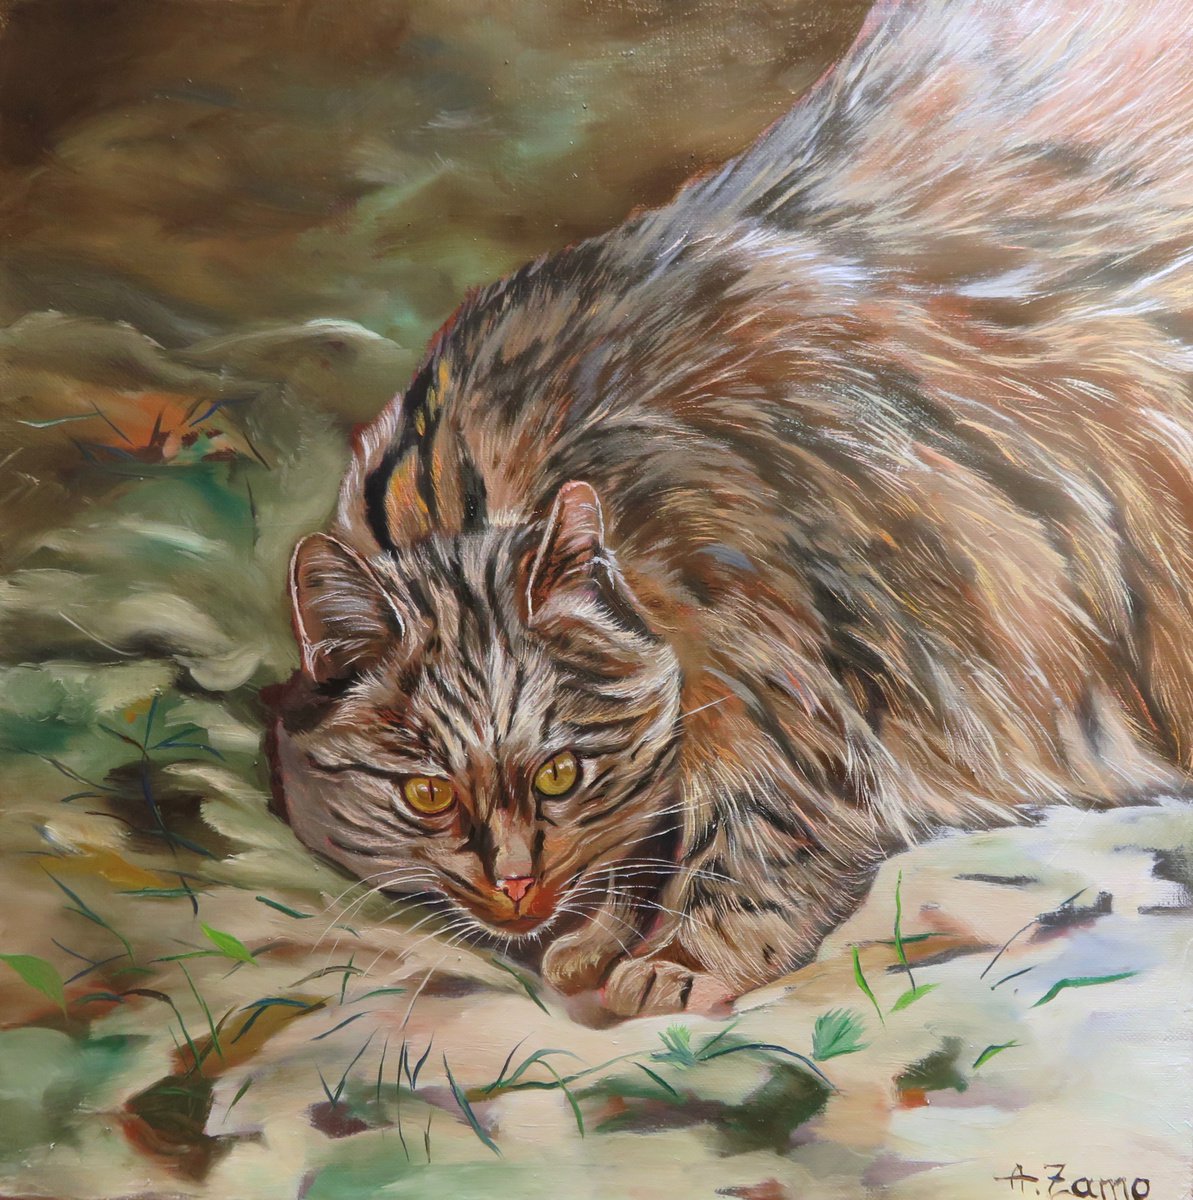 Wild cat 4 by Anne Zamo